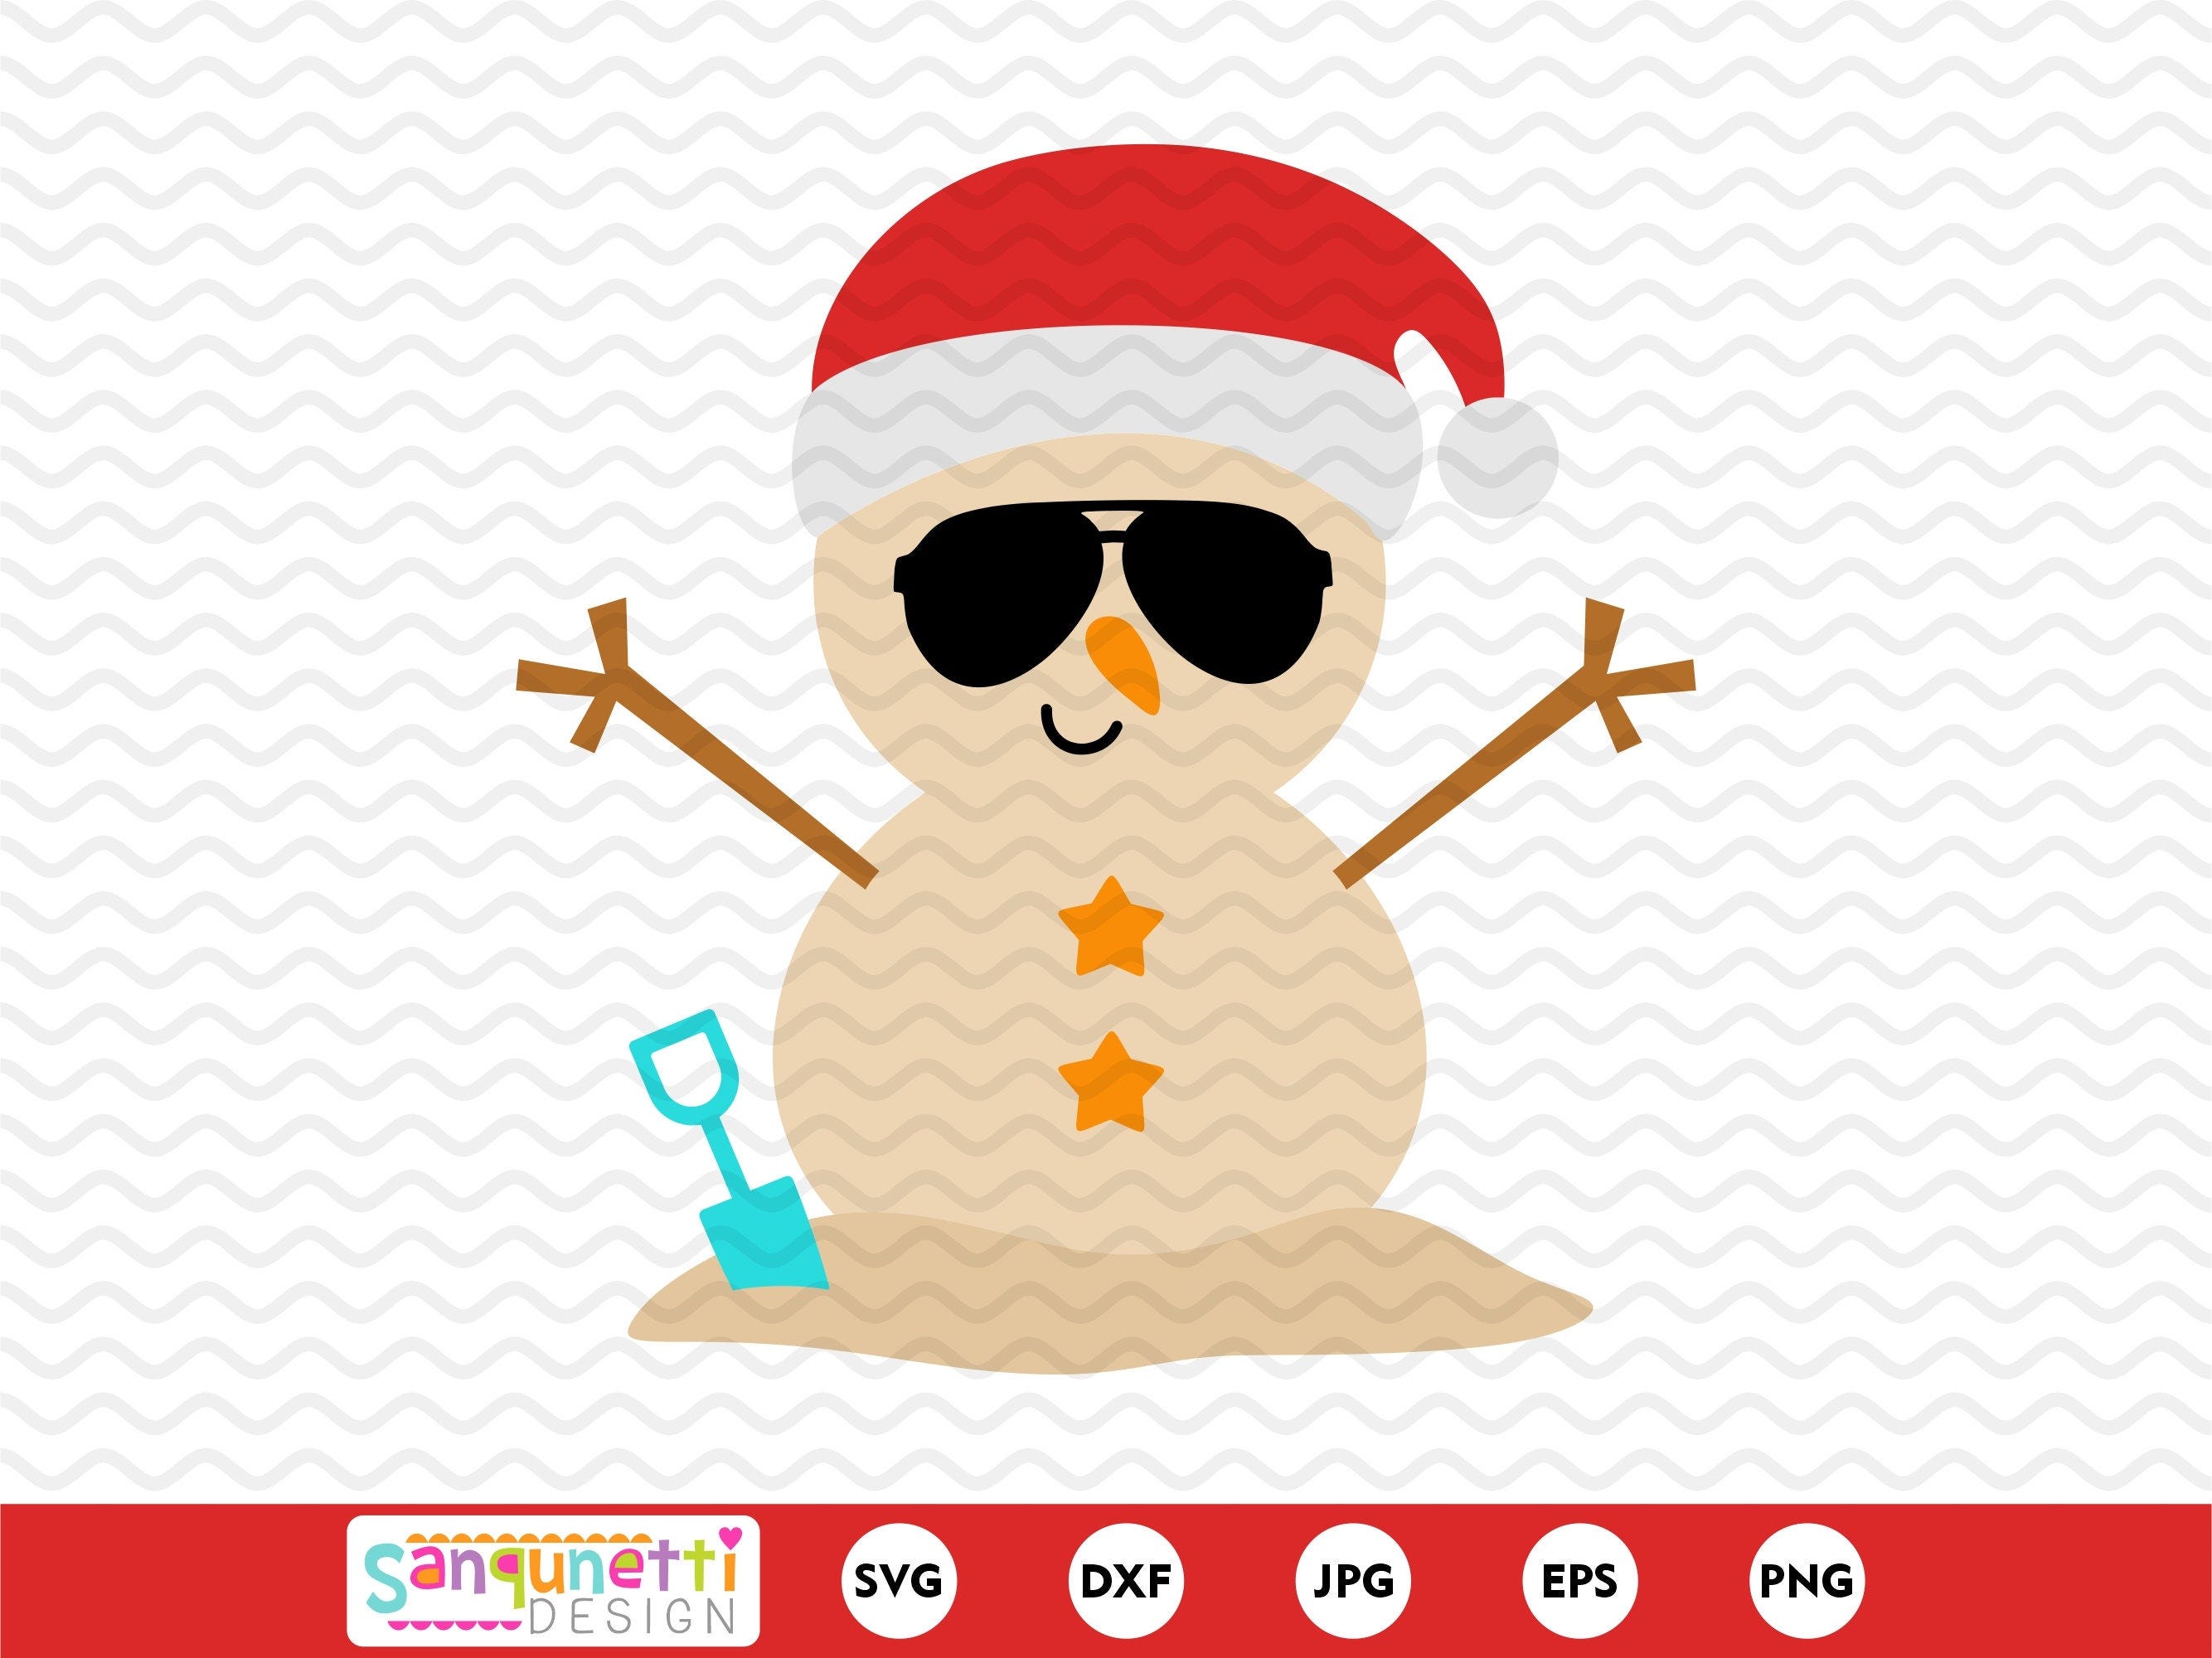 Beach snowman SVG, Tropical Santa cutting files, silhouette and cricut